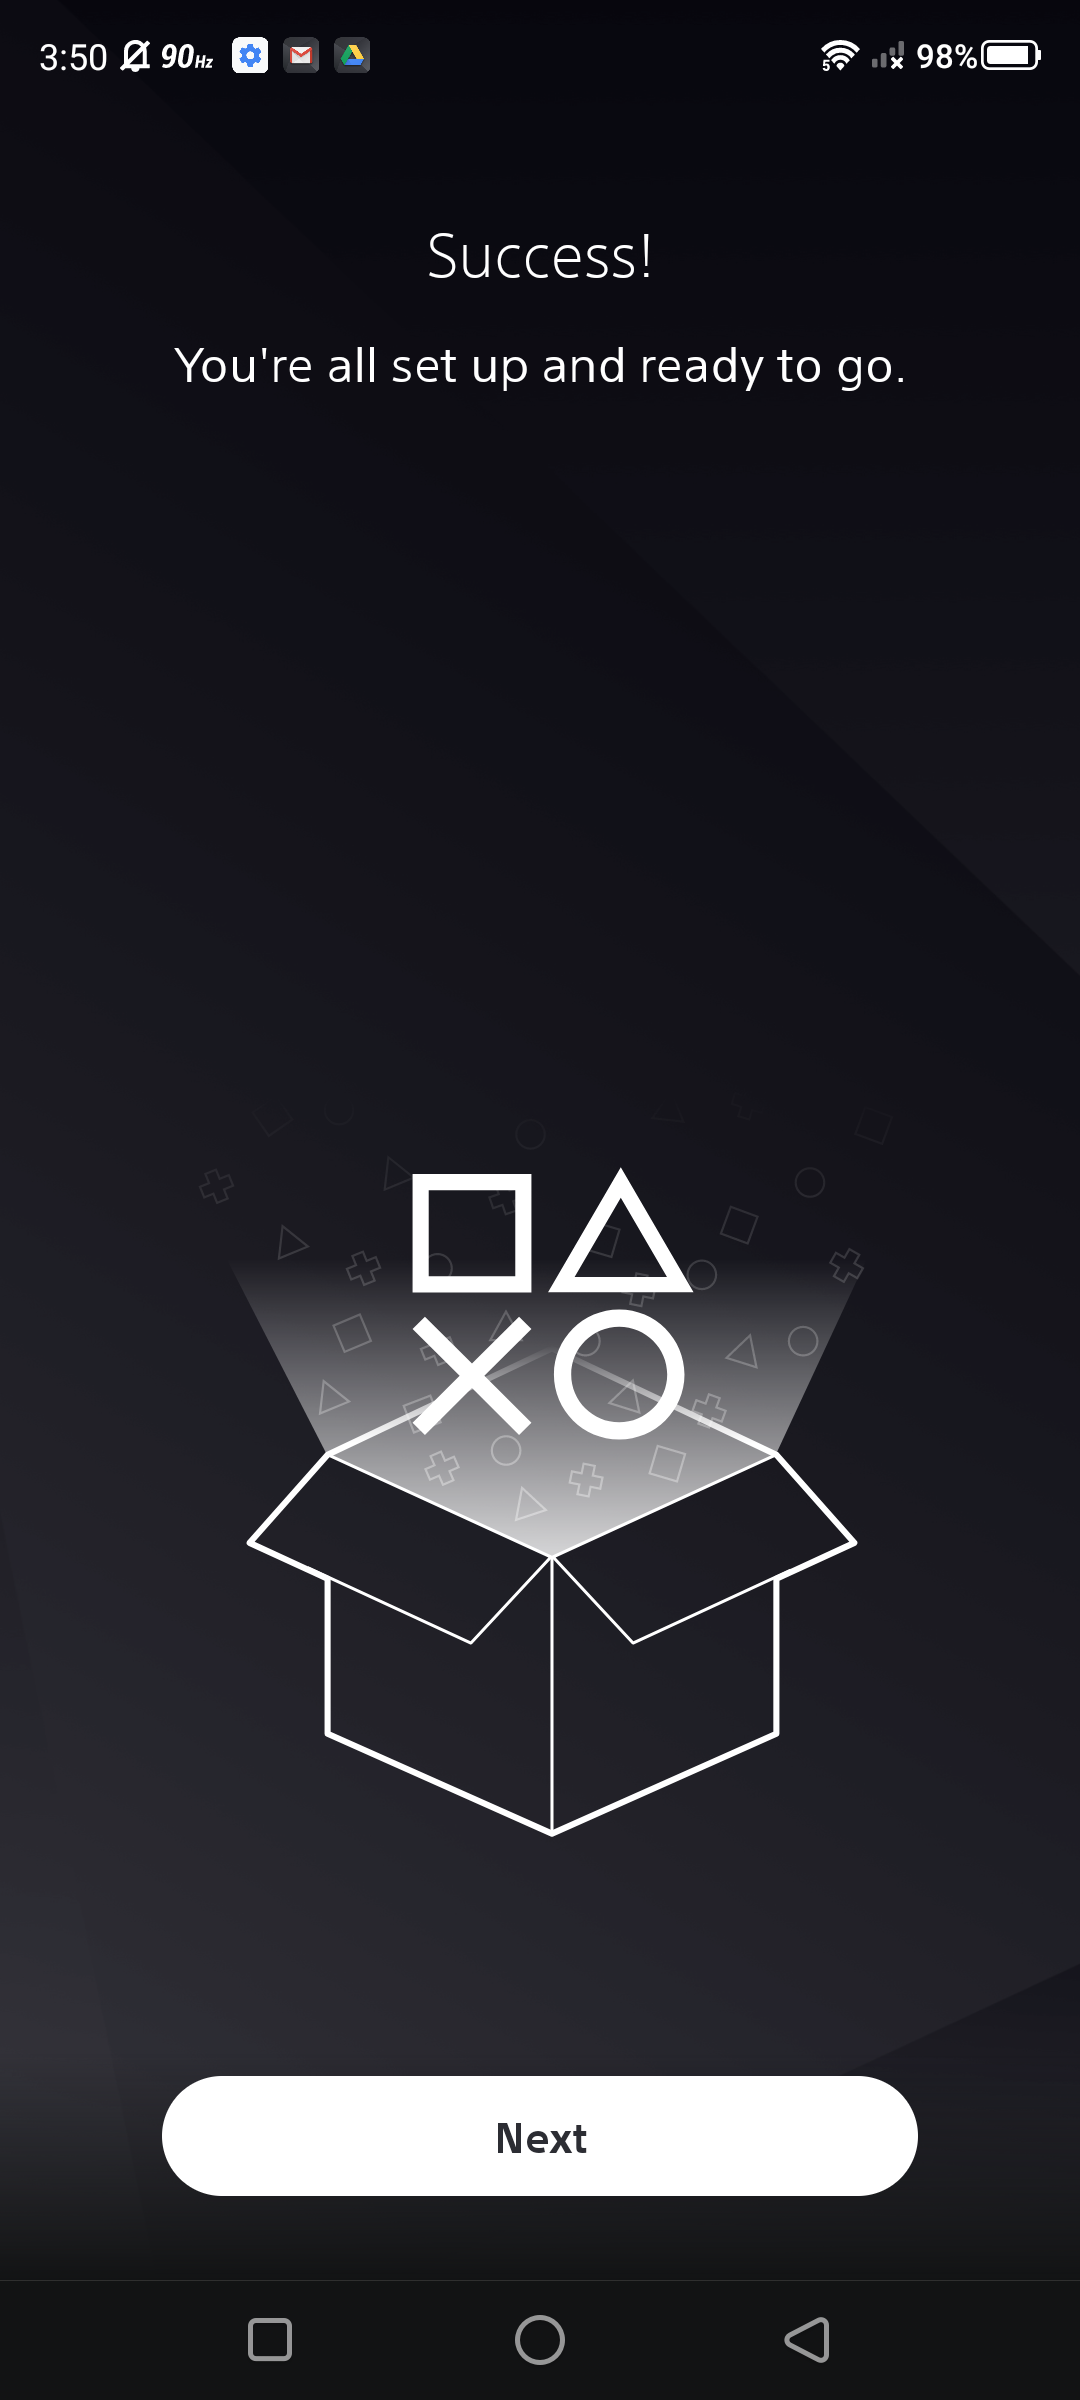 Captura de tela do primeiro uso do aplicativo PlayStation (etapas)